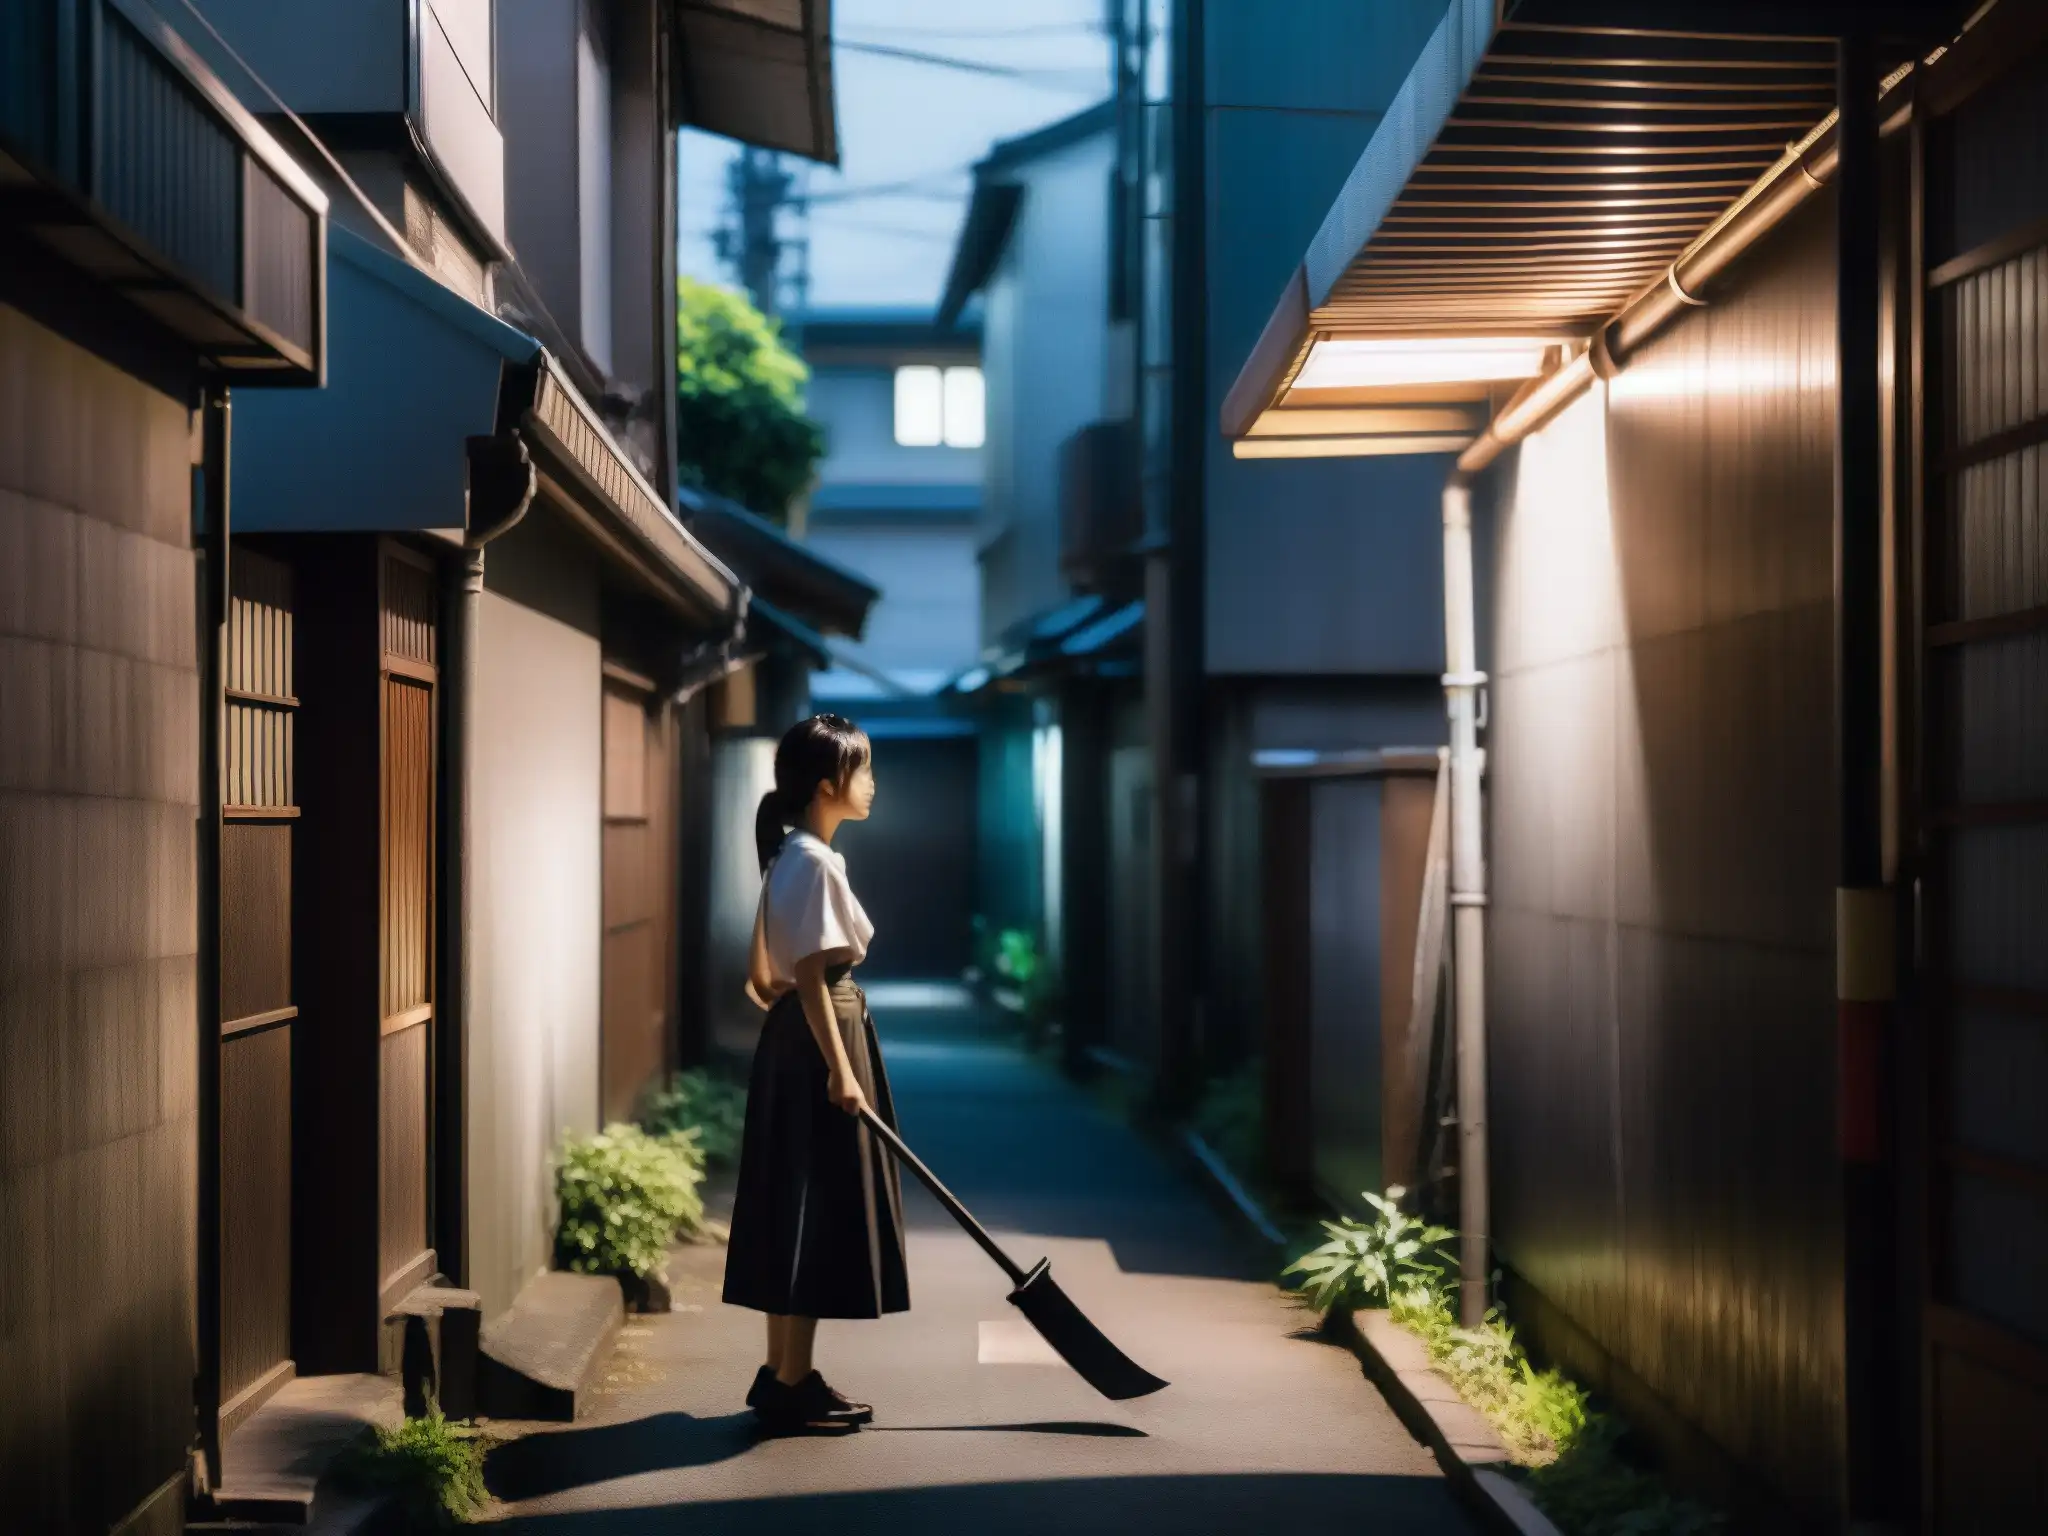 Una figura femenina con una guadaña metálica en un callejón urbano japonés, evocando la inquietante leyenda urbana de TekeTeke